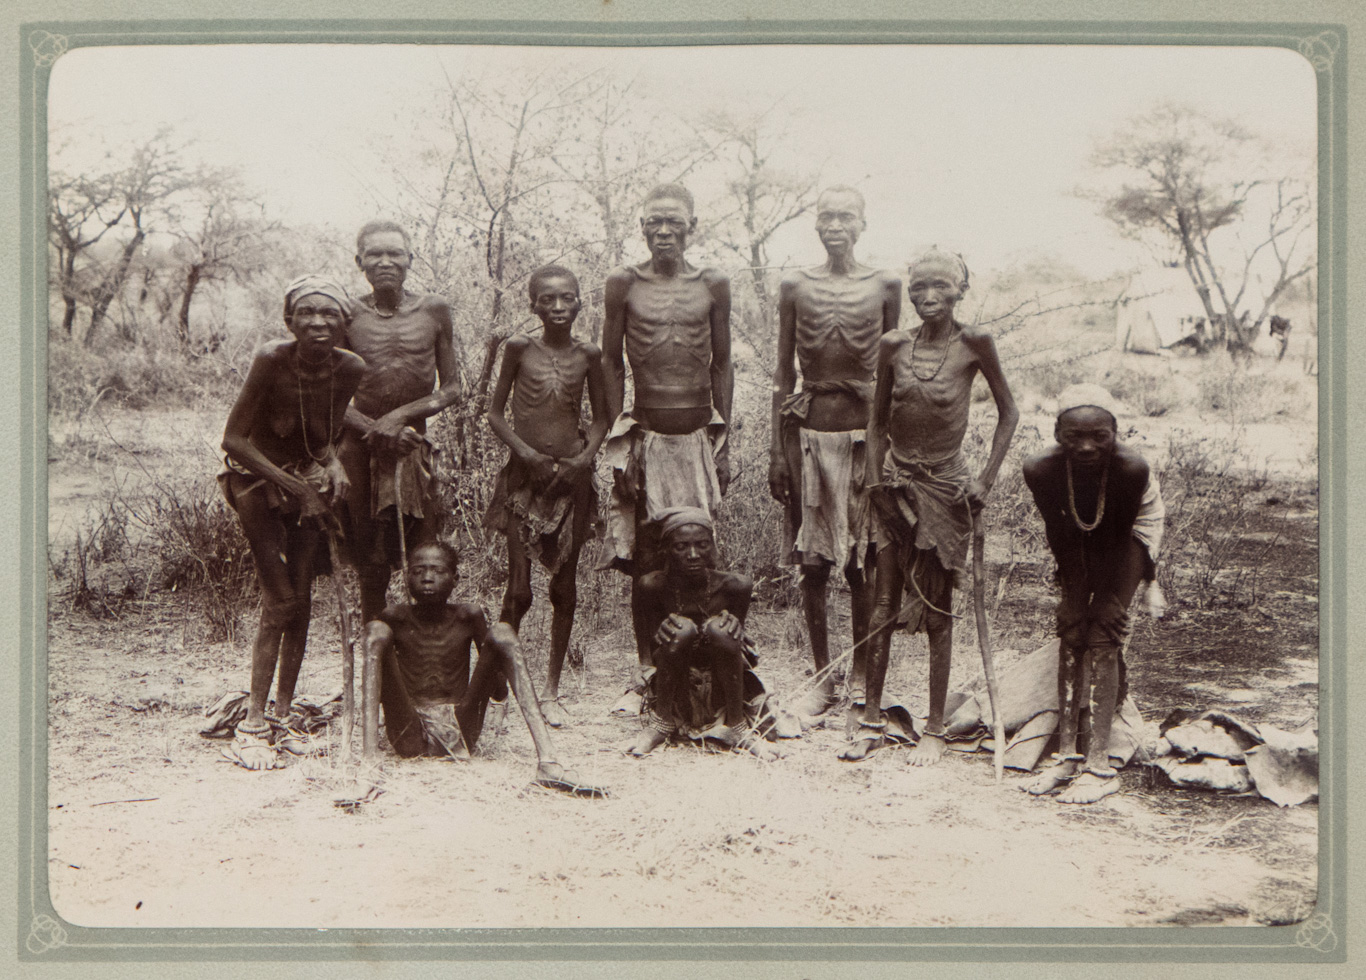 صورة بعنوان "الهيرروس المأسورون"، التقطتها حوالي عام 1904 من قبل المستعمرين الألمان في ناميبيا. صور | المتحف التاريخي الألماني